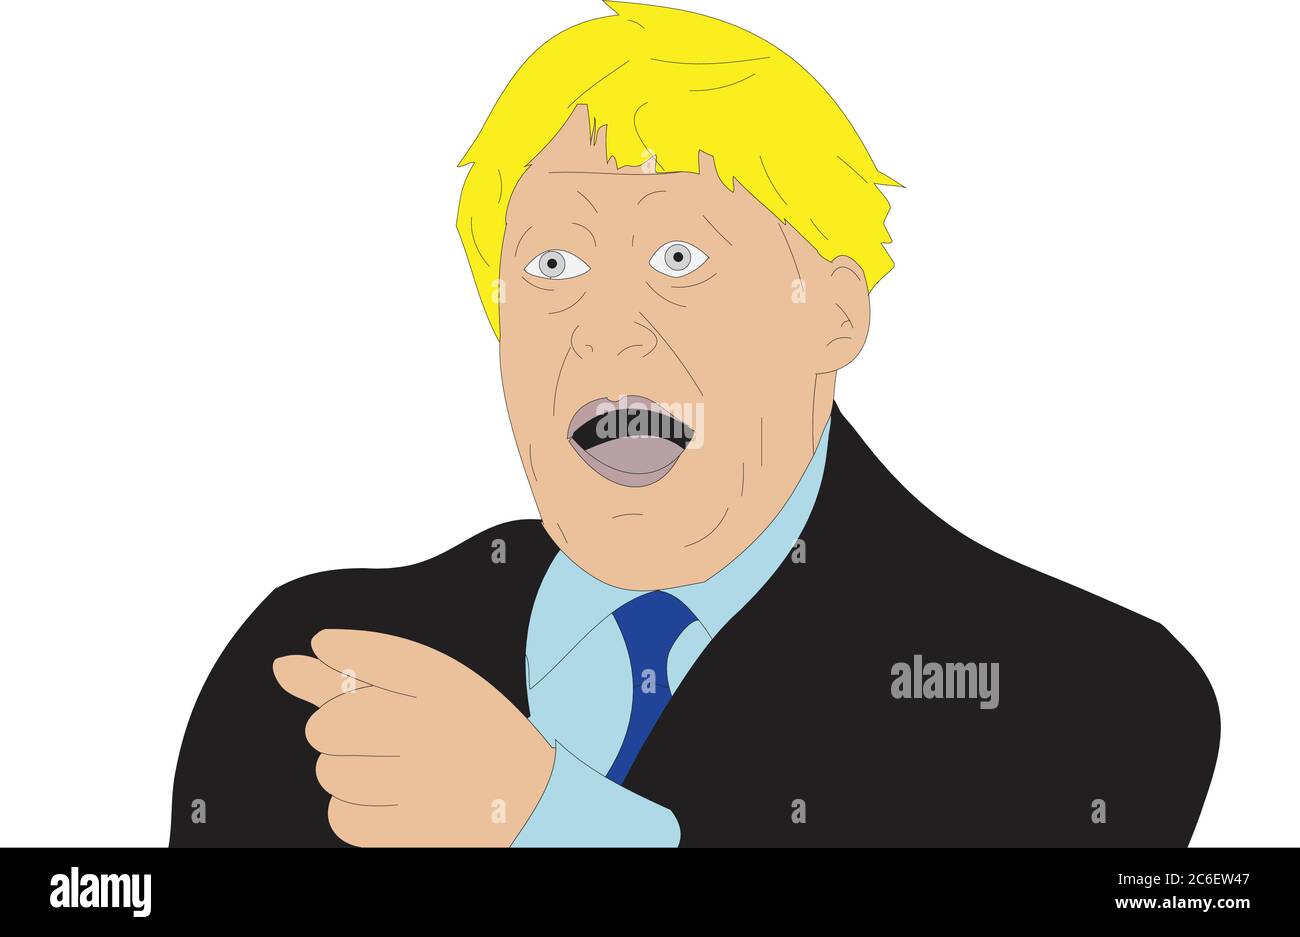 L’illustrazione di Boris Johnson, primo ministro, che punta nell’incredulità, ha colto l’occasione per fare un reporter Illustrazione Vettoriale